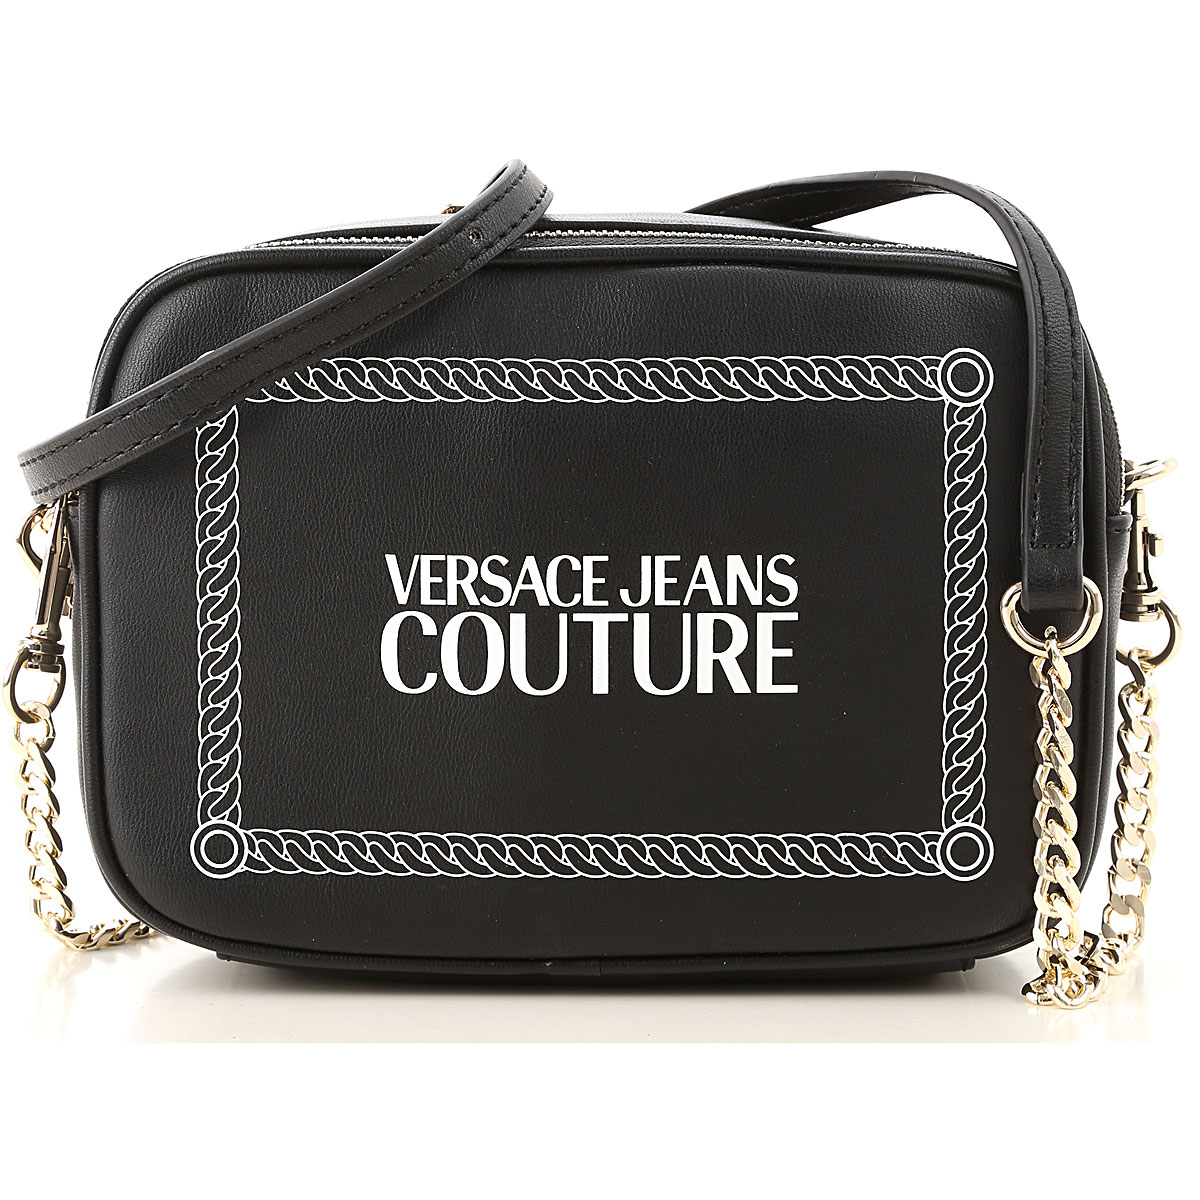 Handbags Versace Jeans Couture , Style code: e1vubbt7-40329-899